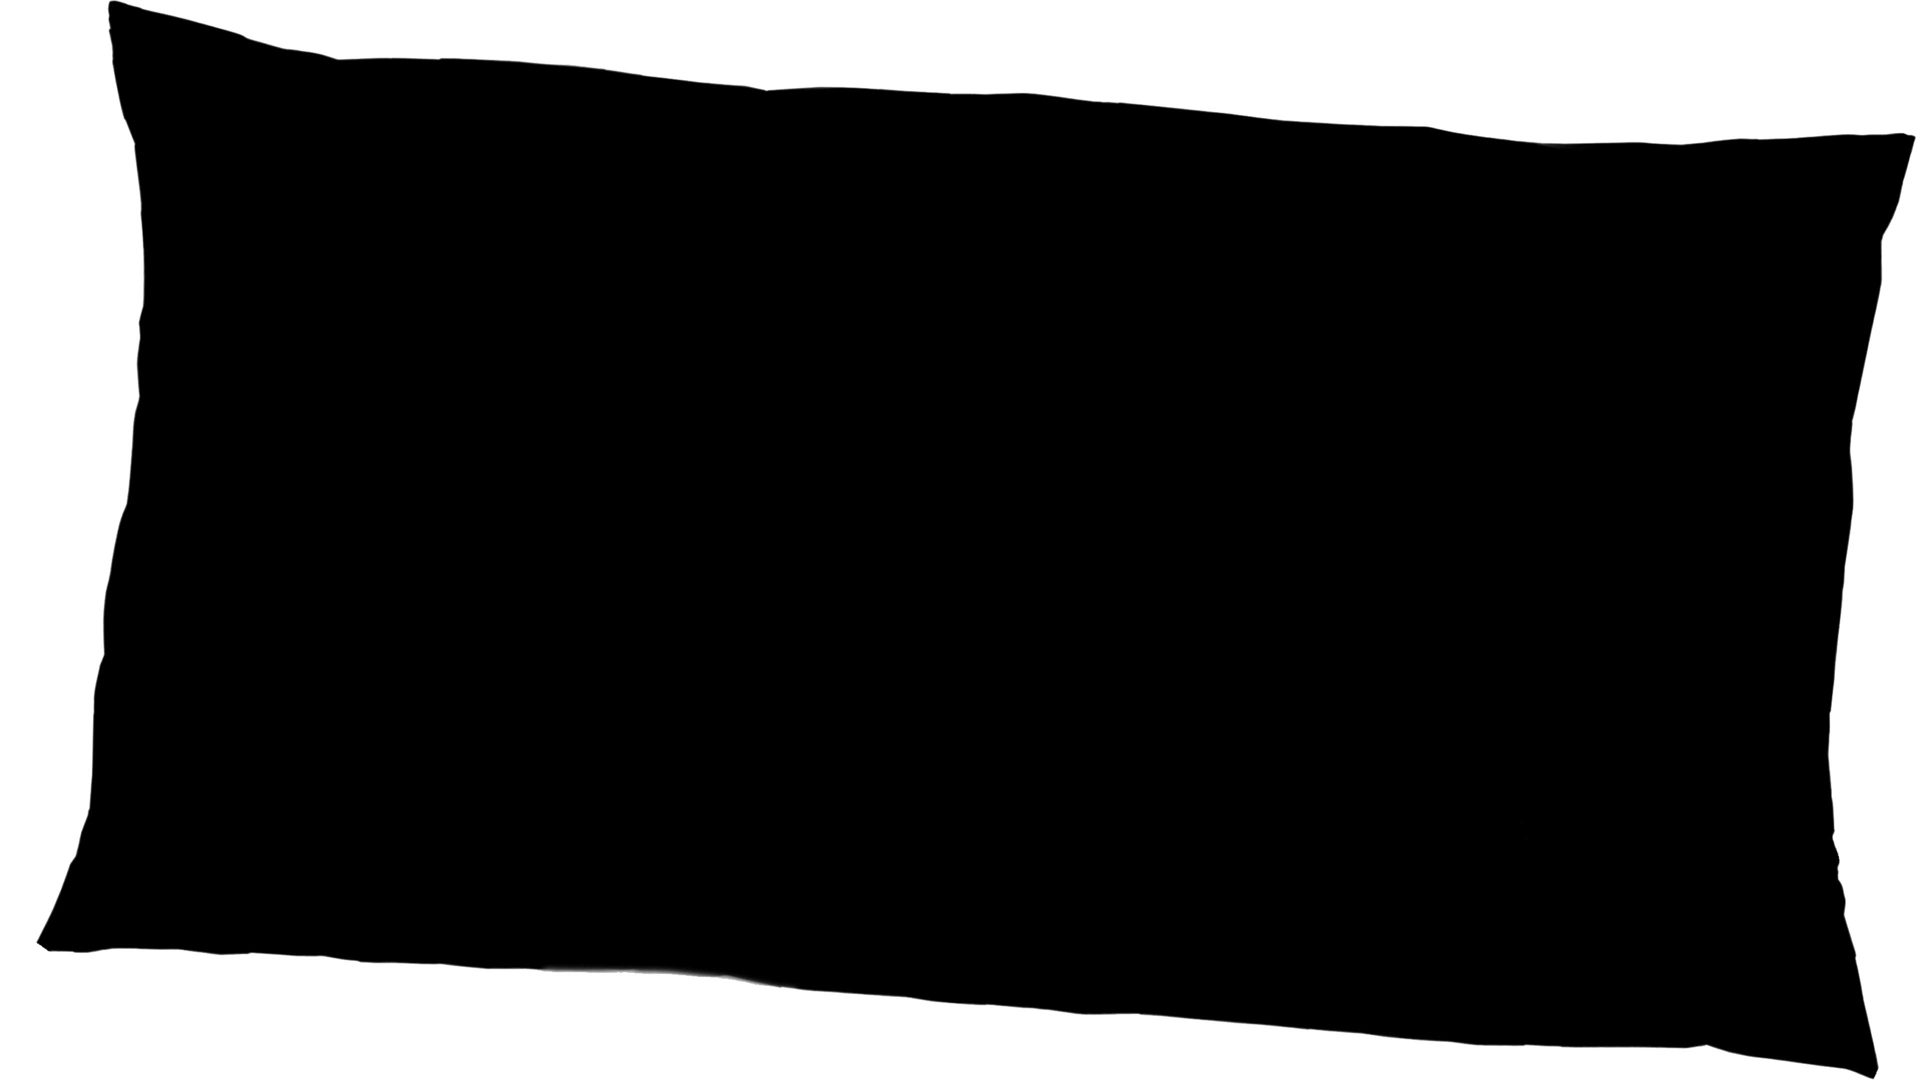 Kissenbezug /-hülle H.g. hahn haustextilien aus Stoff in Schwarz Luxus-Satin-Kopfkissenbezug Sempre schwarzer Baumwollsatin – ca. 40 x 80 cm